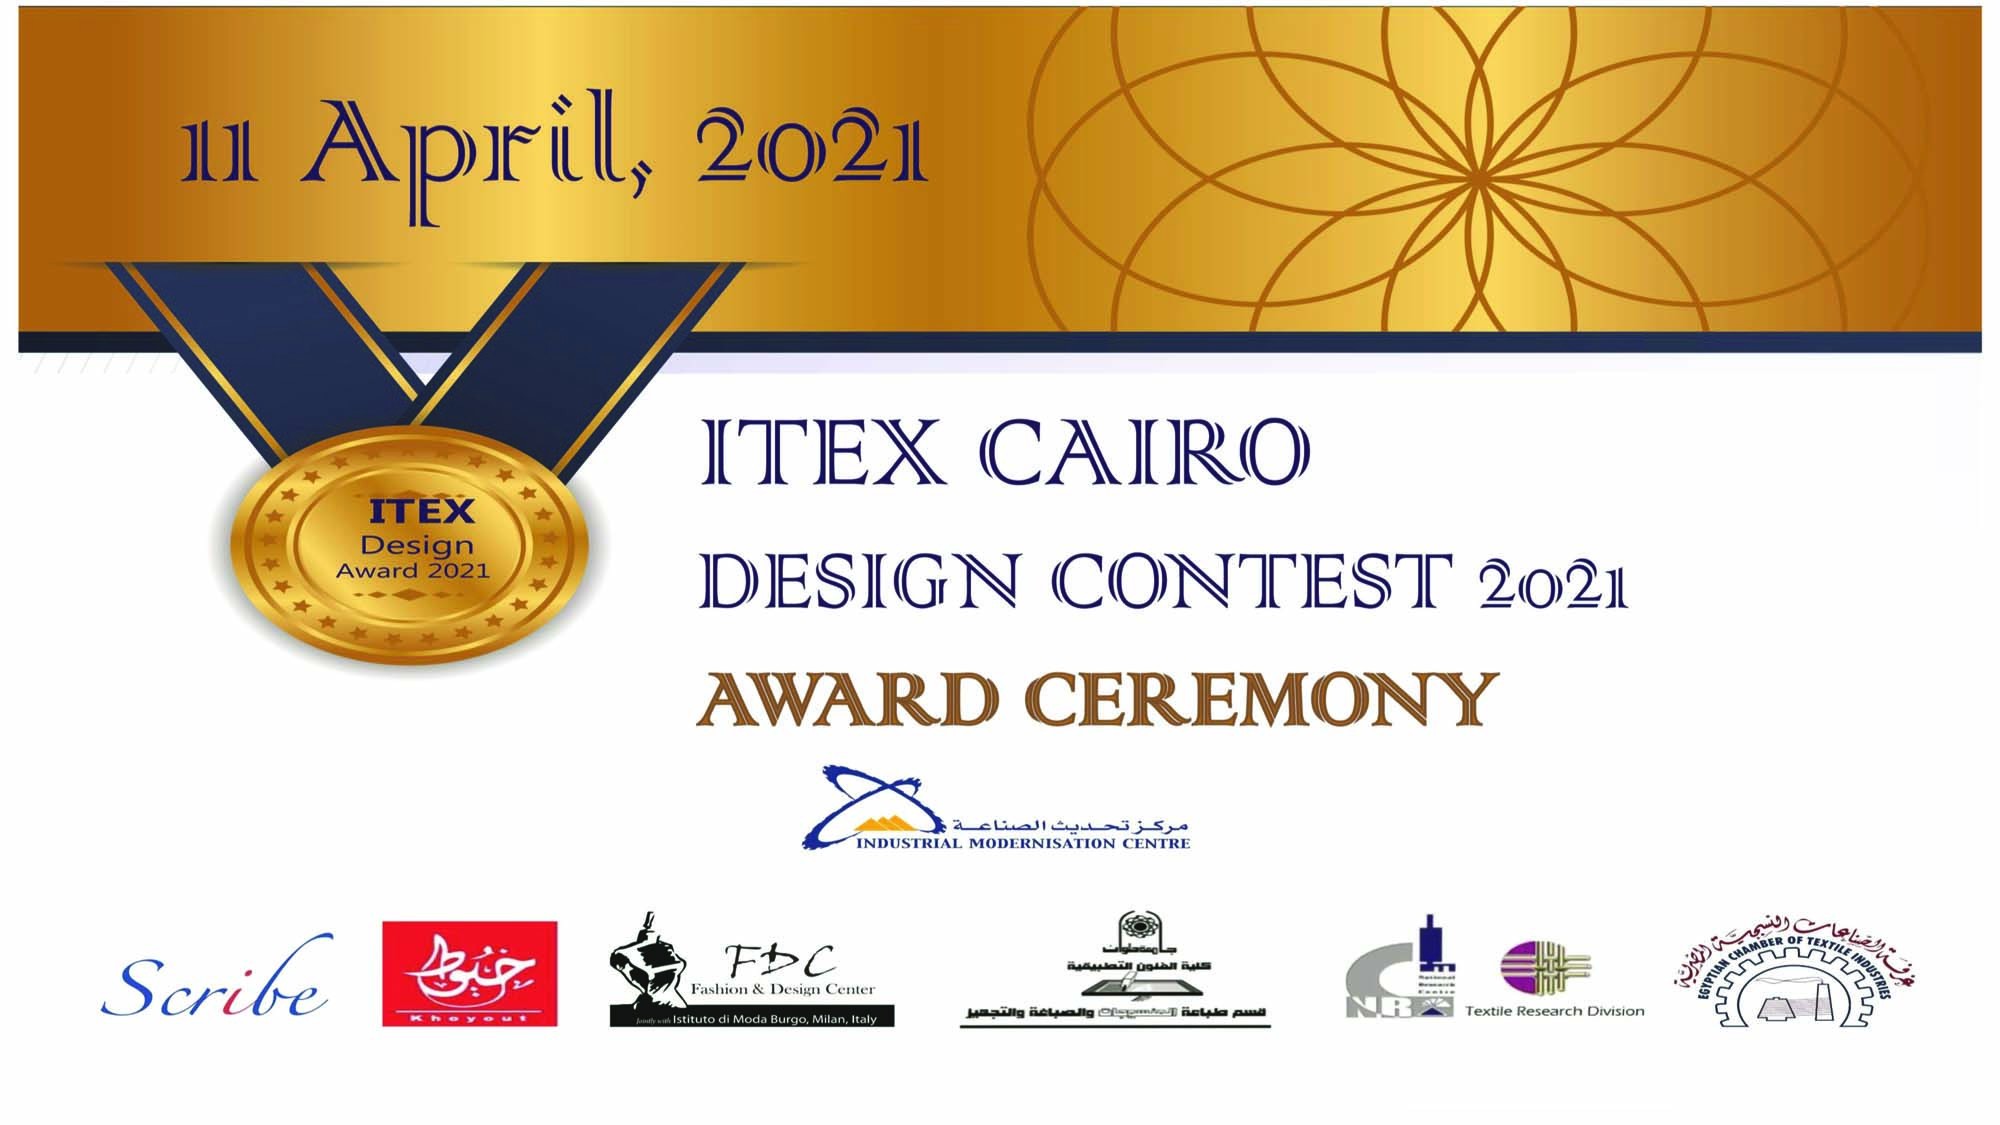 ITEX Design Contest